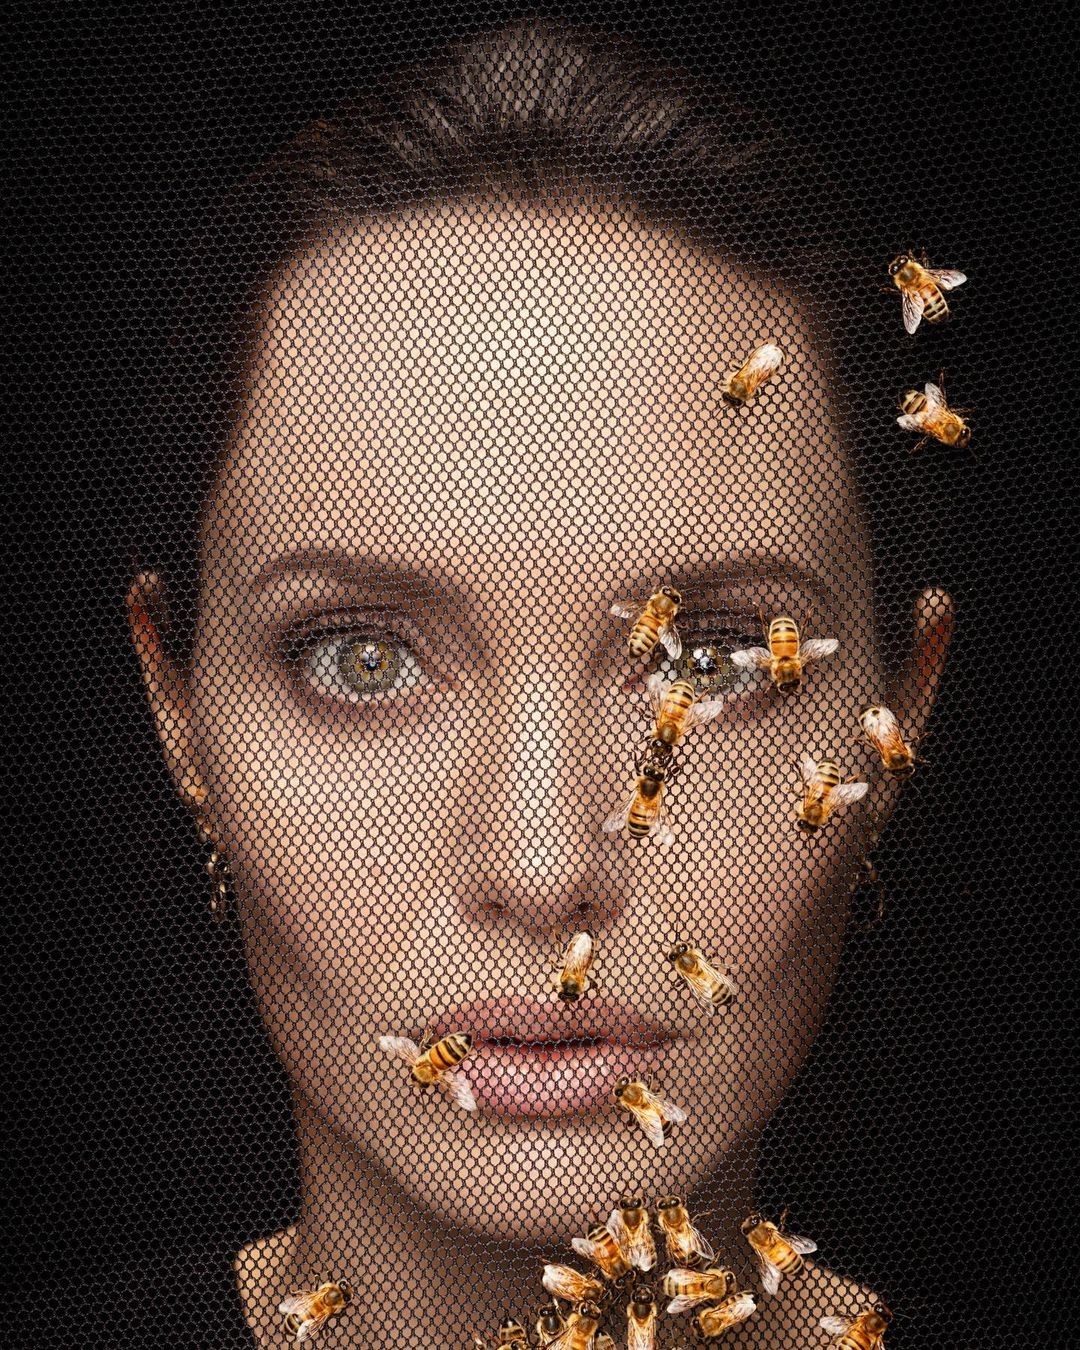 Angelina Jolie (Foto: Reprodução Instagram)